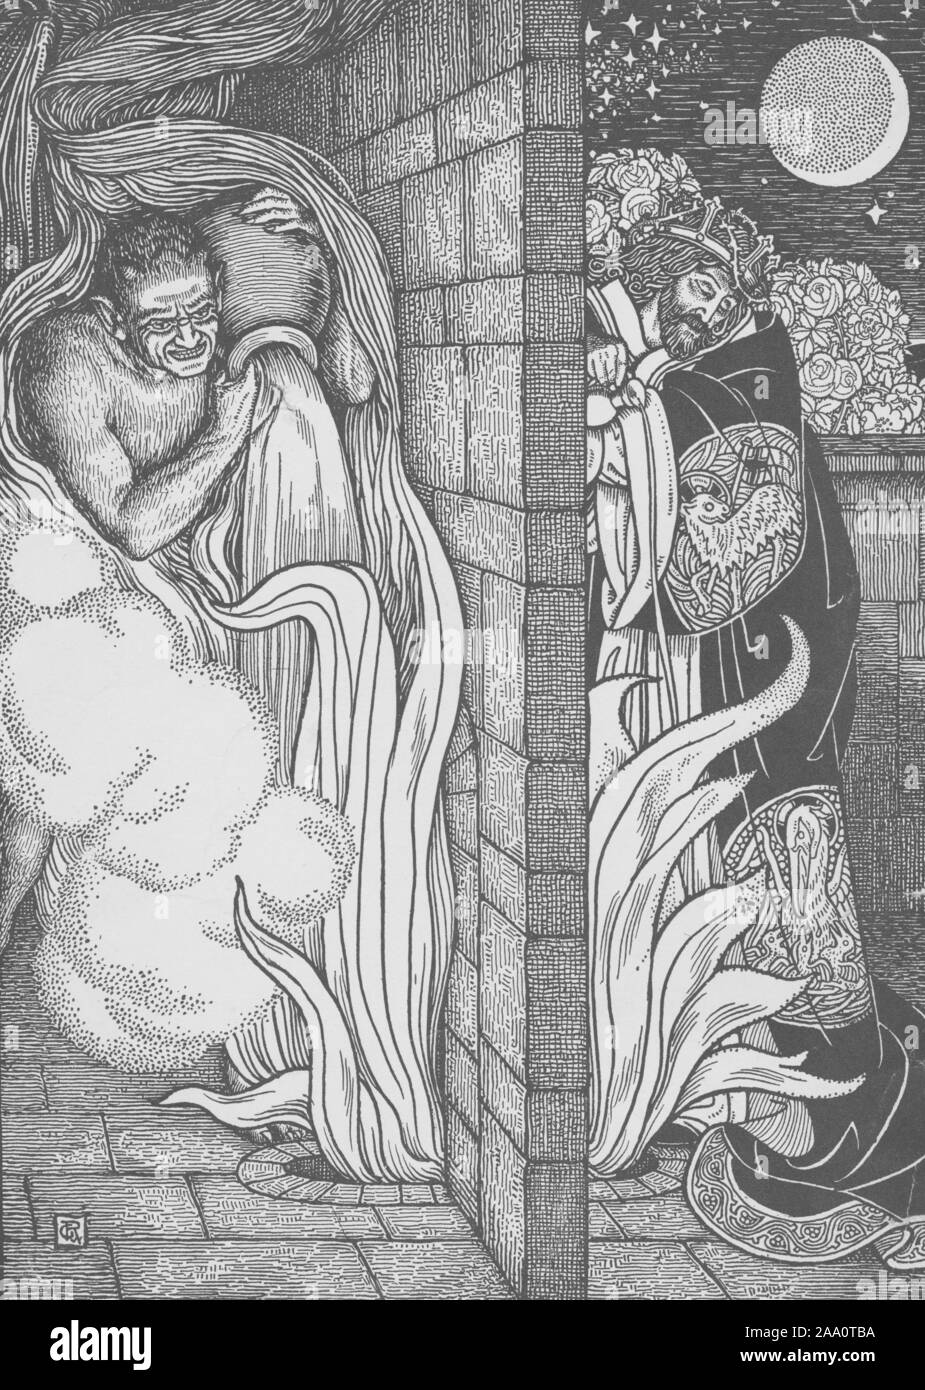 Monochrome Darstellung einer Szene aus dem Buch "Pilgrim's Progress" von John Bunyan, mit dem Teufel und Jesus Christus auf beiden Seiten der Wand, zünden das Feuer in der Grube und die anderen versuchen, es durch Gießen von Wasser auf, um es zu löschen, von George Rhead, durch das Jahrhundert Co, 1898 illustriert. Von der New York Public Library. () Stockfoto